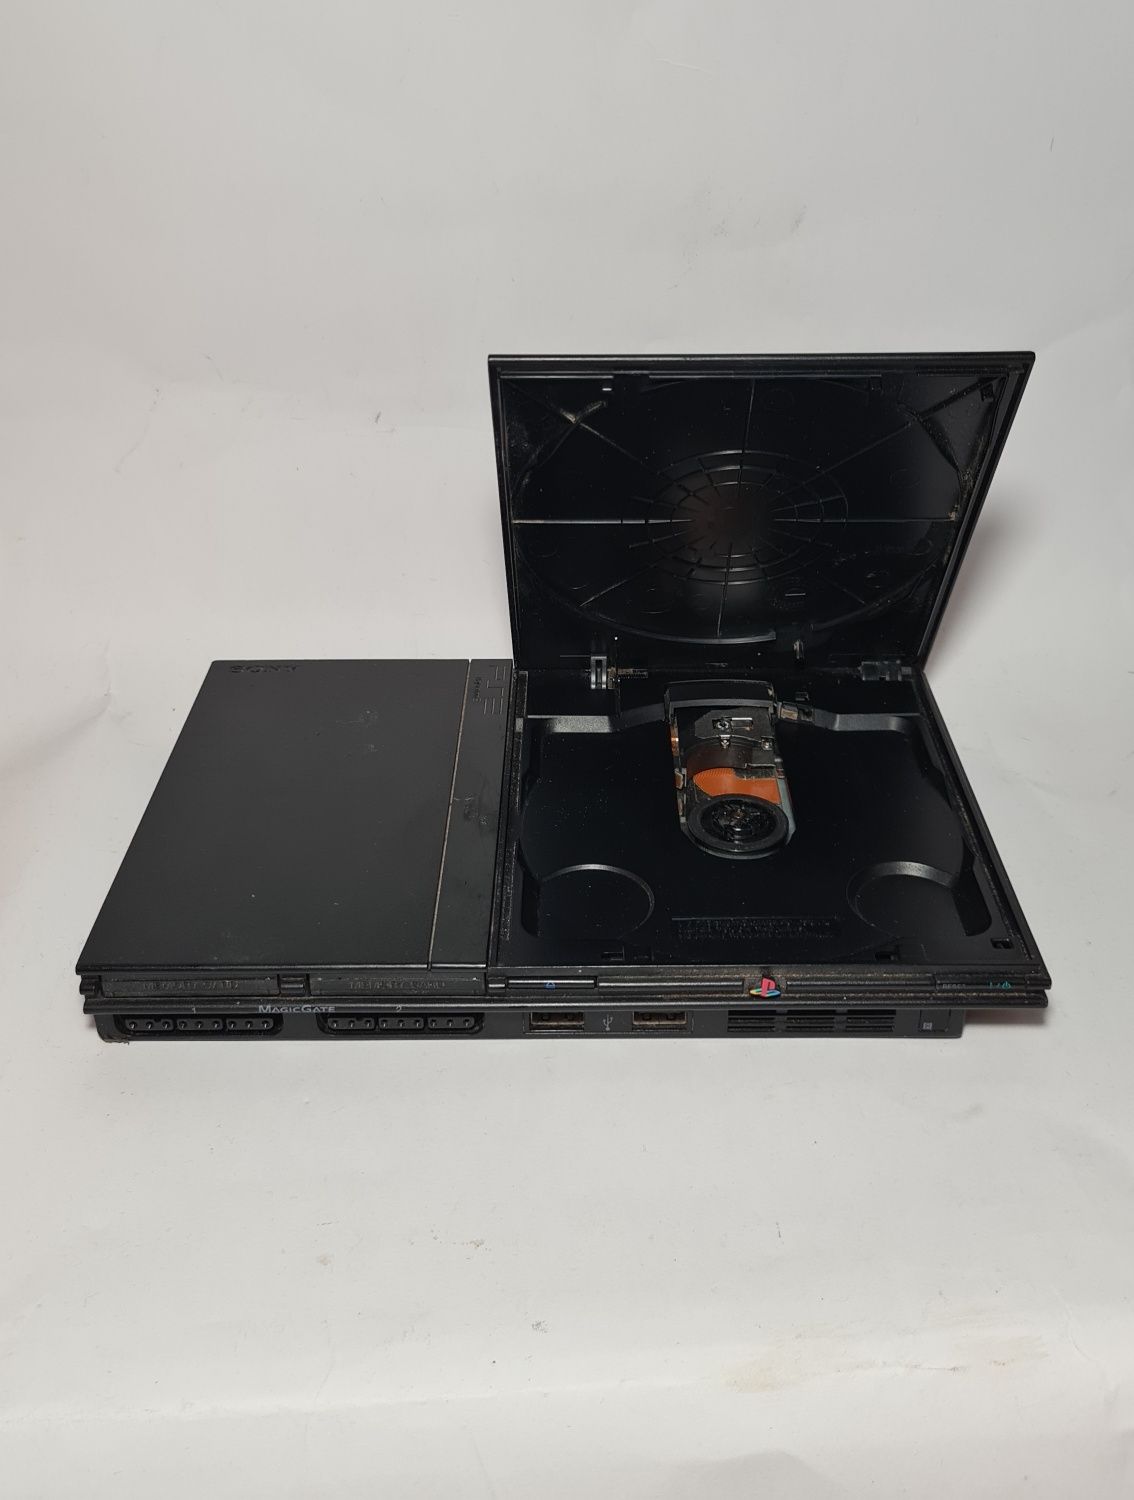 SONY Playstation 2 Slim PS2 + Подарък Пълен комплект игра конзола